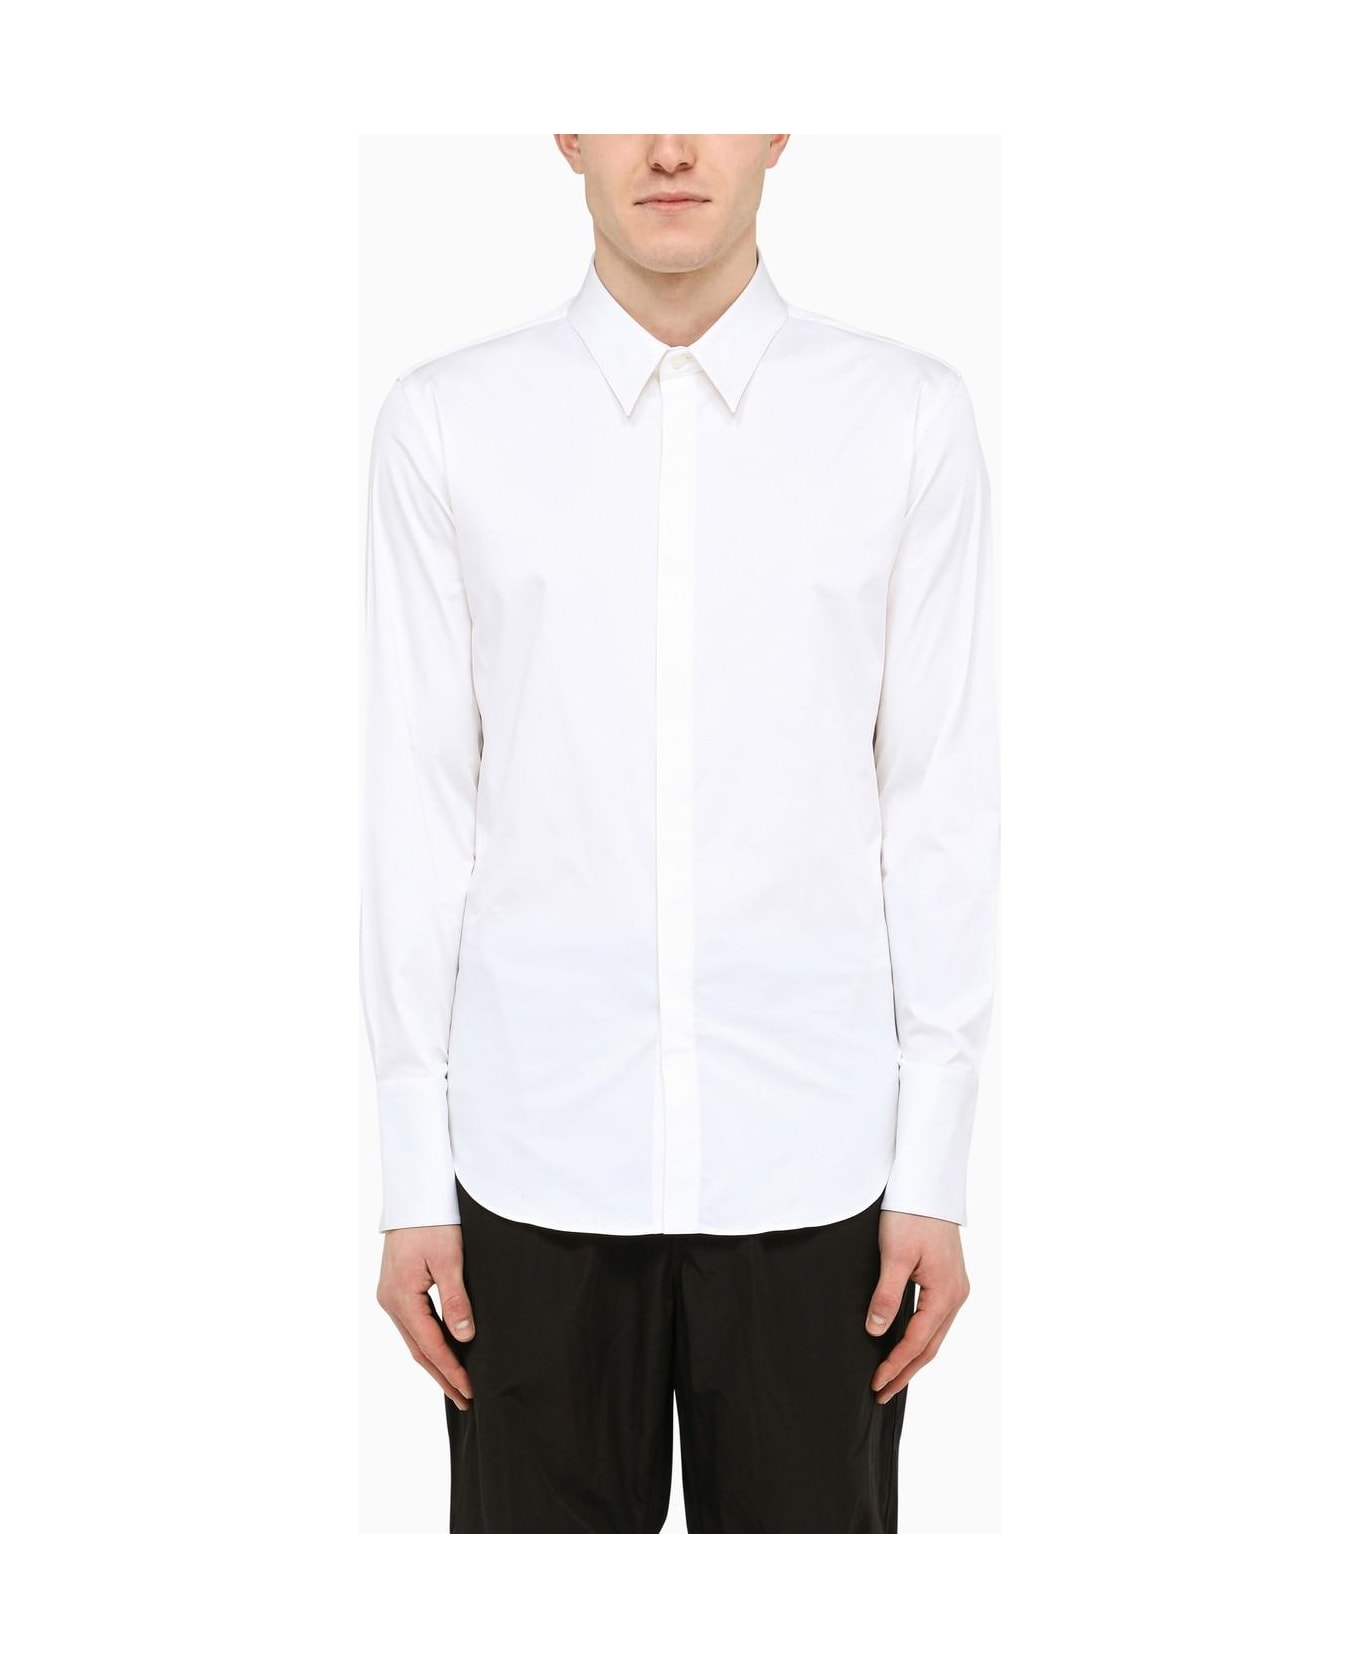 Ferragamo Classic White Cotton Shirt - White